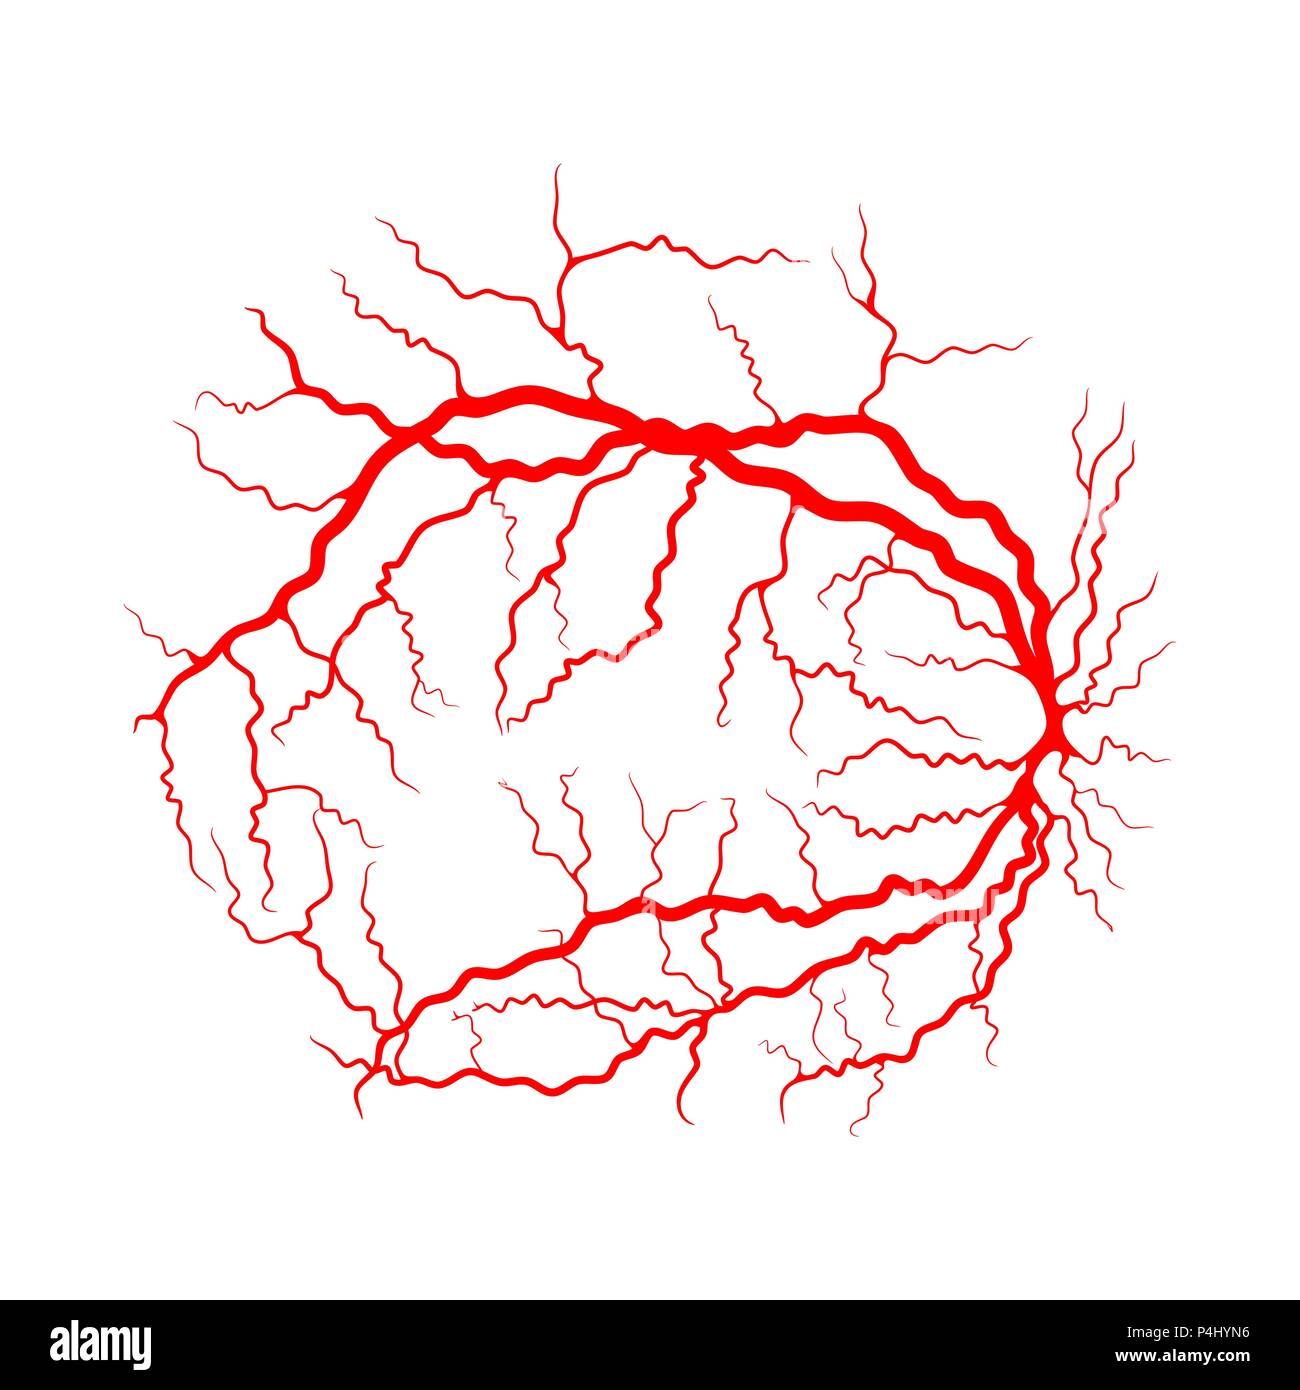 Système veineux de l'œil d'angiographie par rayons x design vector isolated on white Illustration de Vecteur